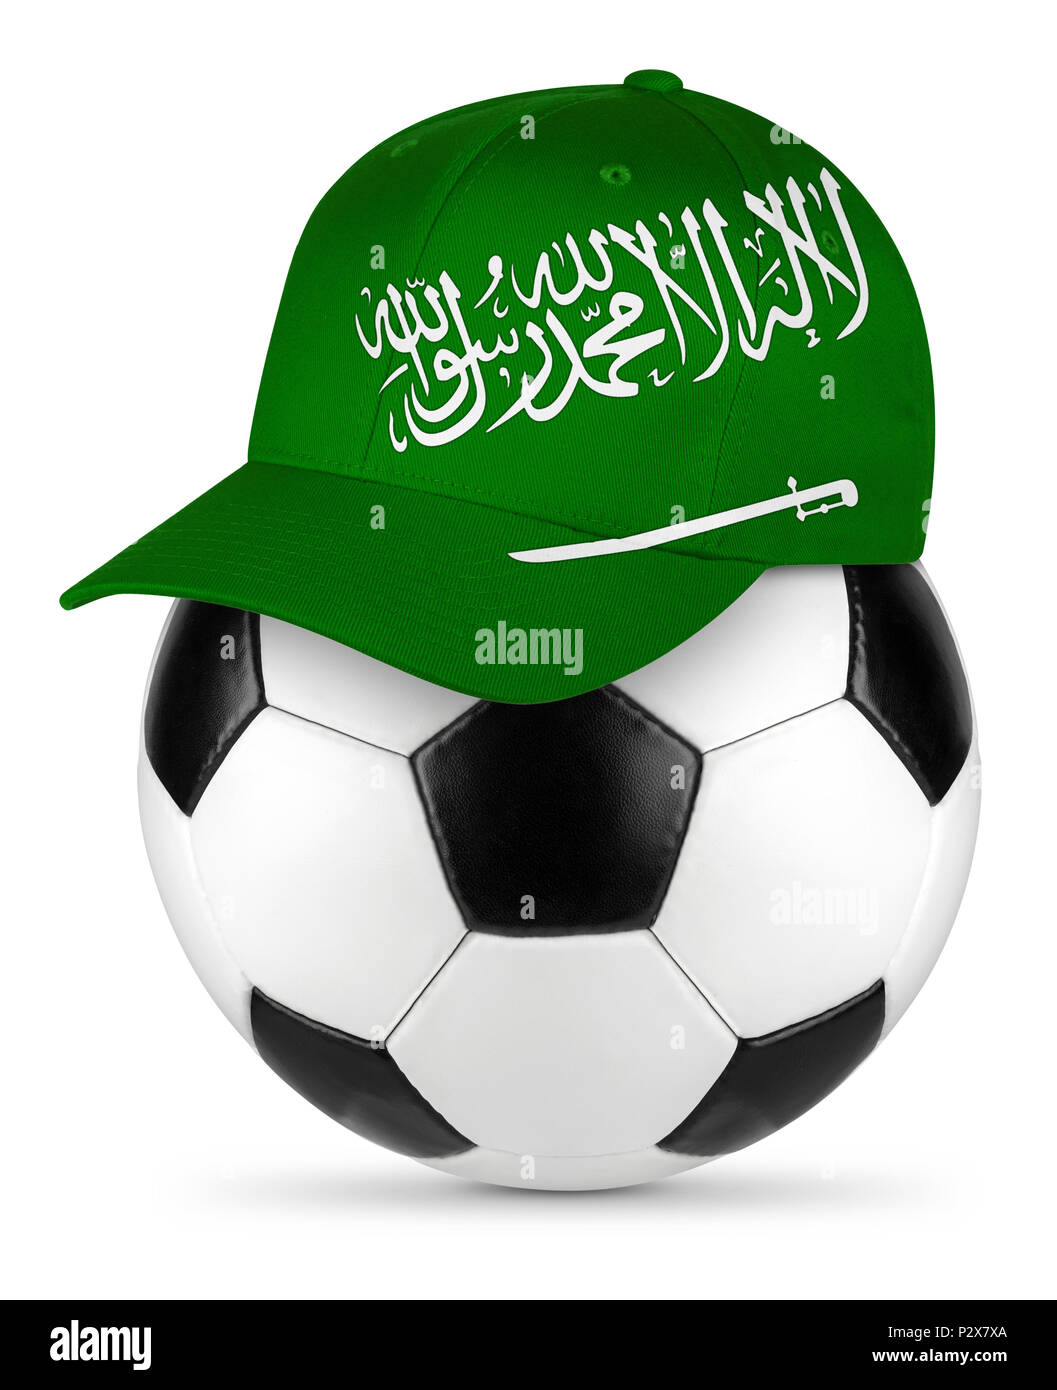 Classic schwarz weiß leder Fußball mit Saudi-arabien 1001 Baseball Fan Cap  isoliert Hintergrund Sport Fußball-Konzept Stockfotografie - Alamy